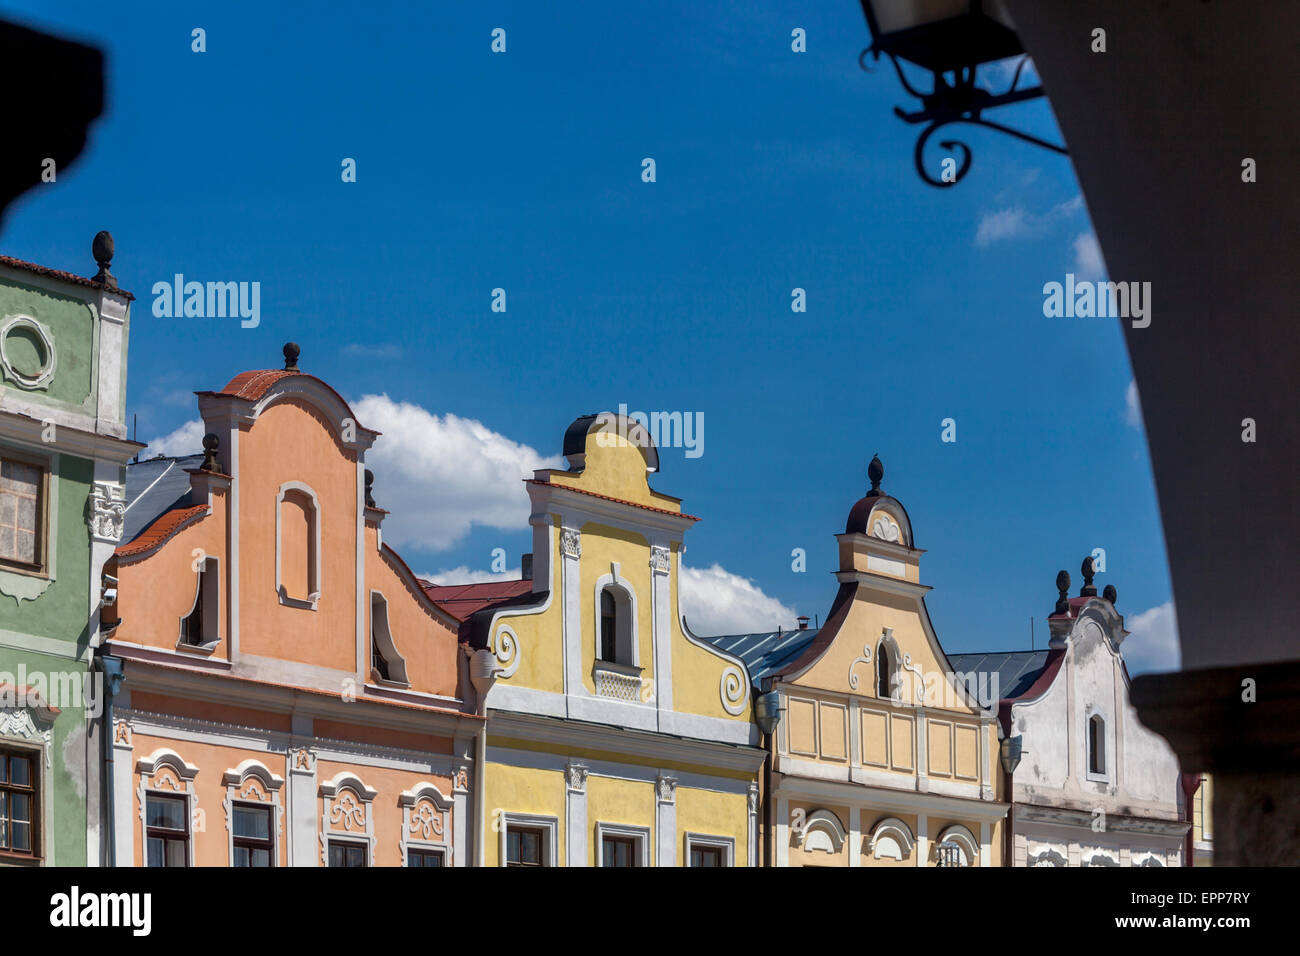 Telc Repubblica Ceca case barocche colorate sulla piazza principale Foto Stock